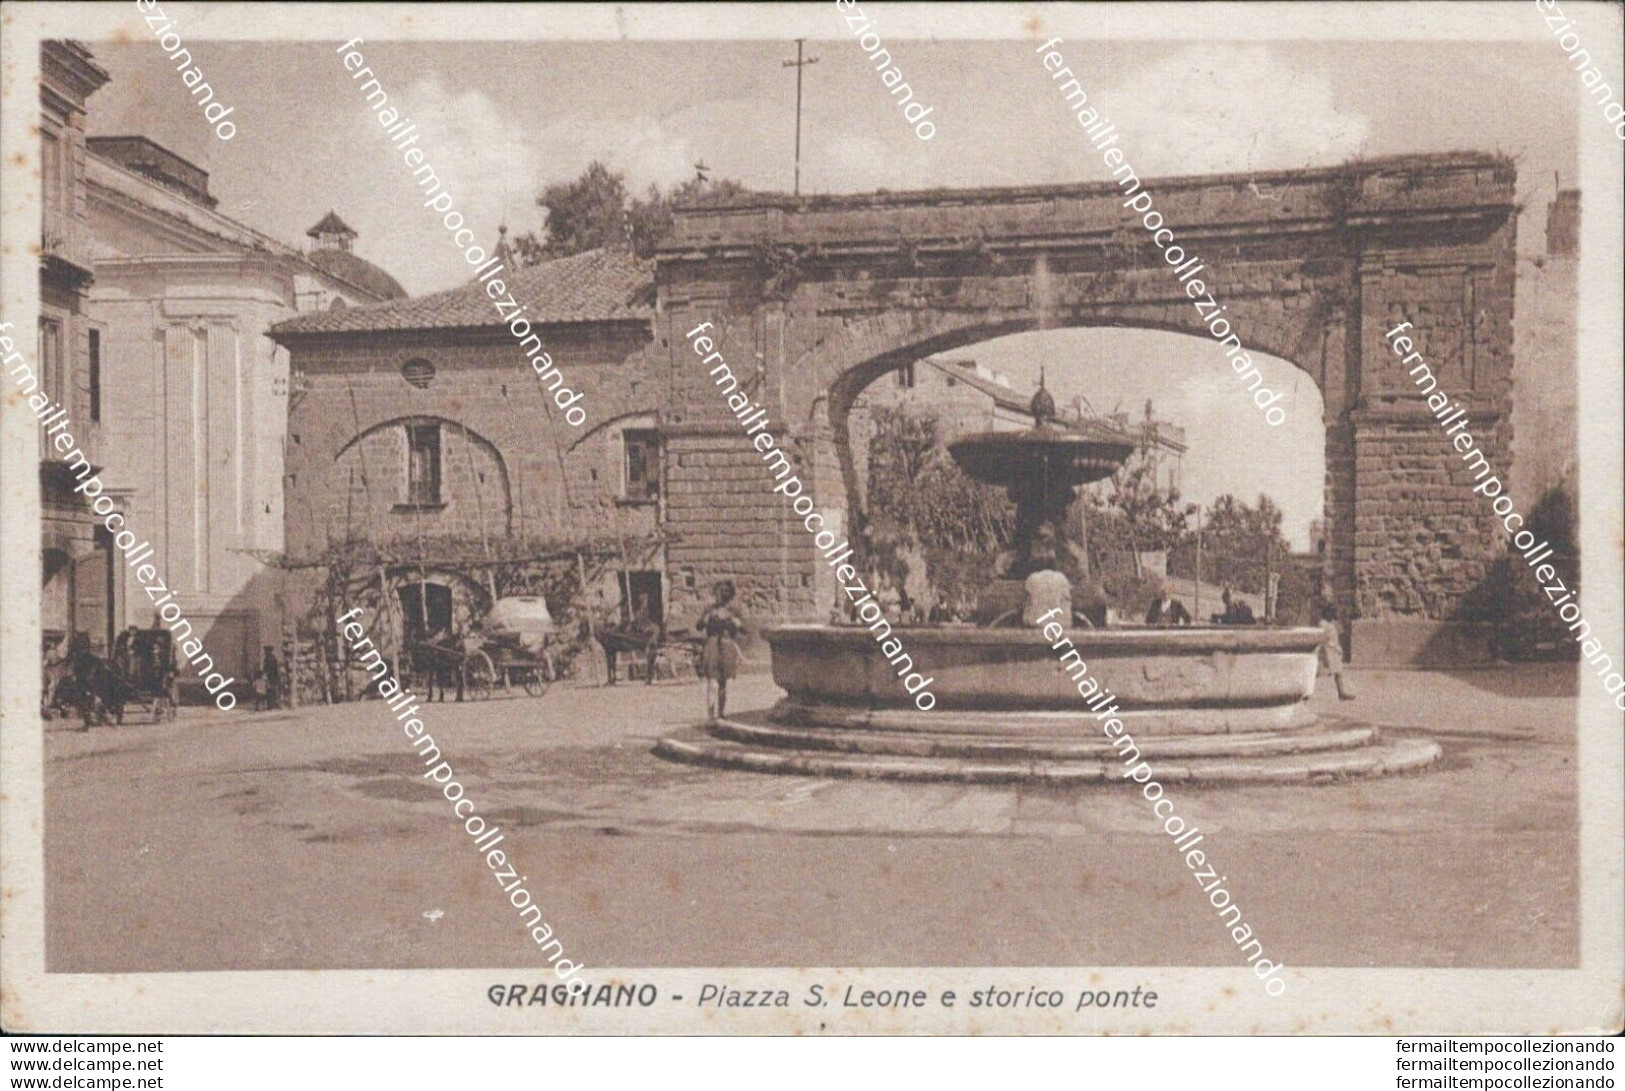 At61 Cartolina Gragnano Piazza S.leone E Storico Ponte 1939 Provincia Di Napoli - Napoli